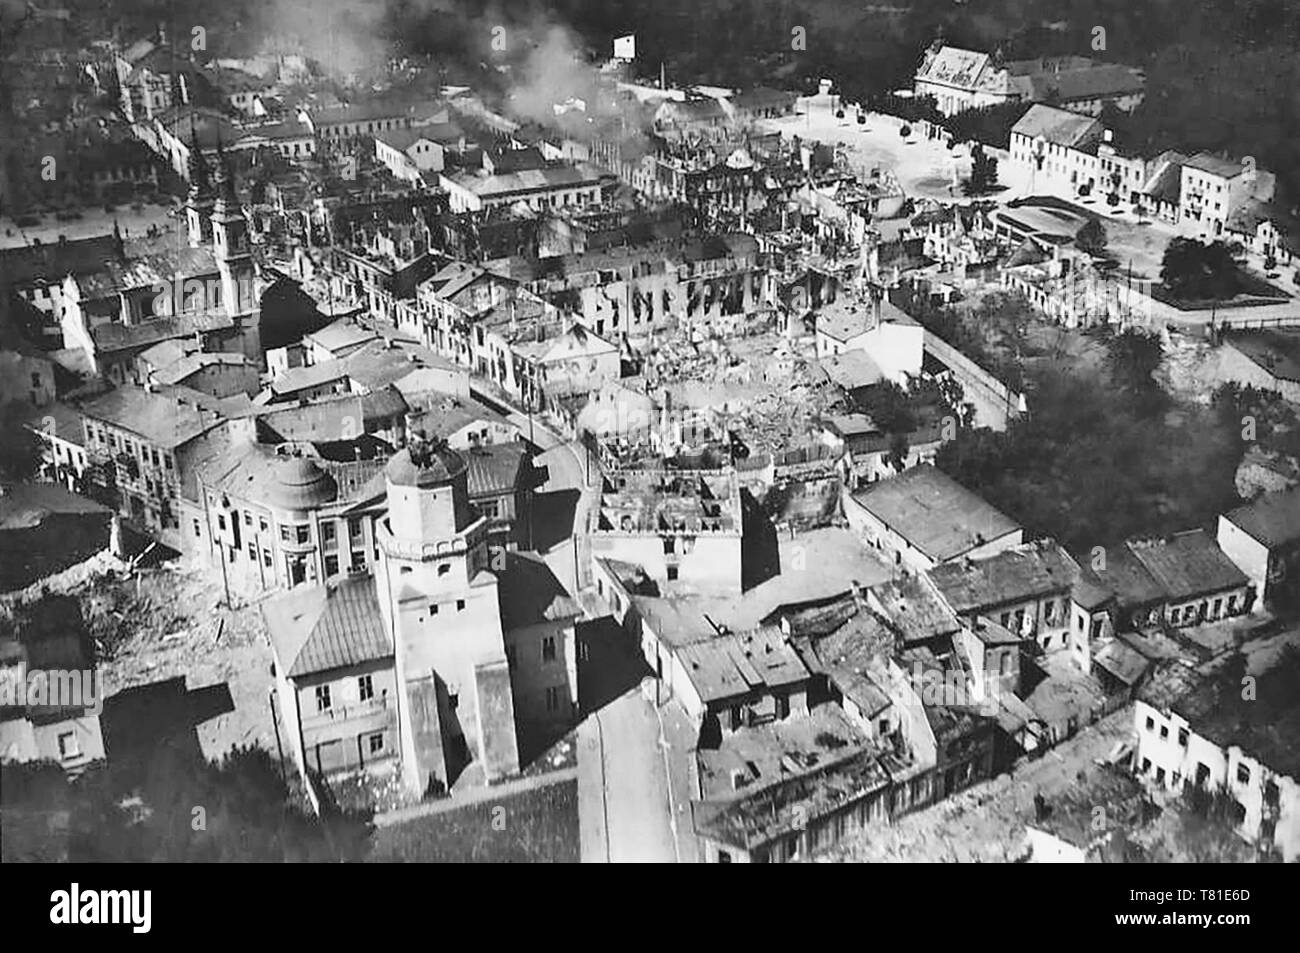 Wielun, gerade nach der deutschen Luftwaffe Bombenangriffe am 1. September 1939 (Der erste Tag der WK II) Foto vom Kirchturm in Wielun gemacht Stockfoto